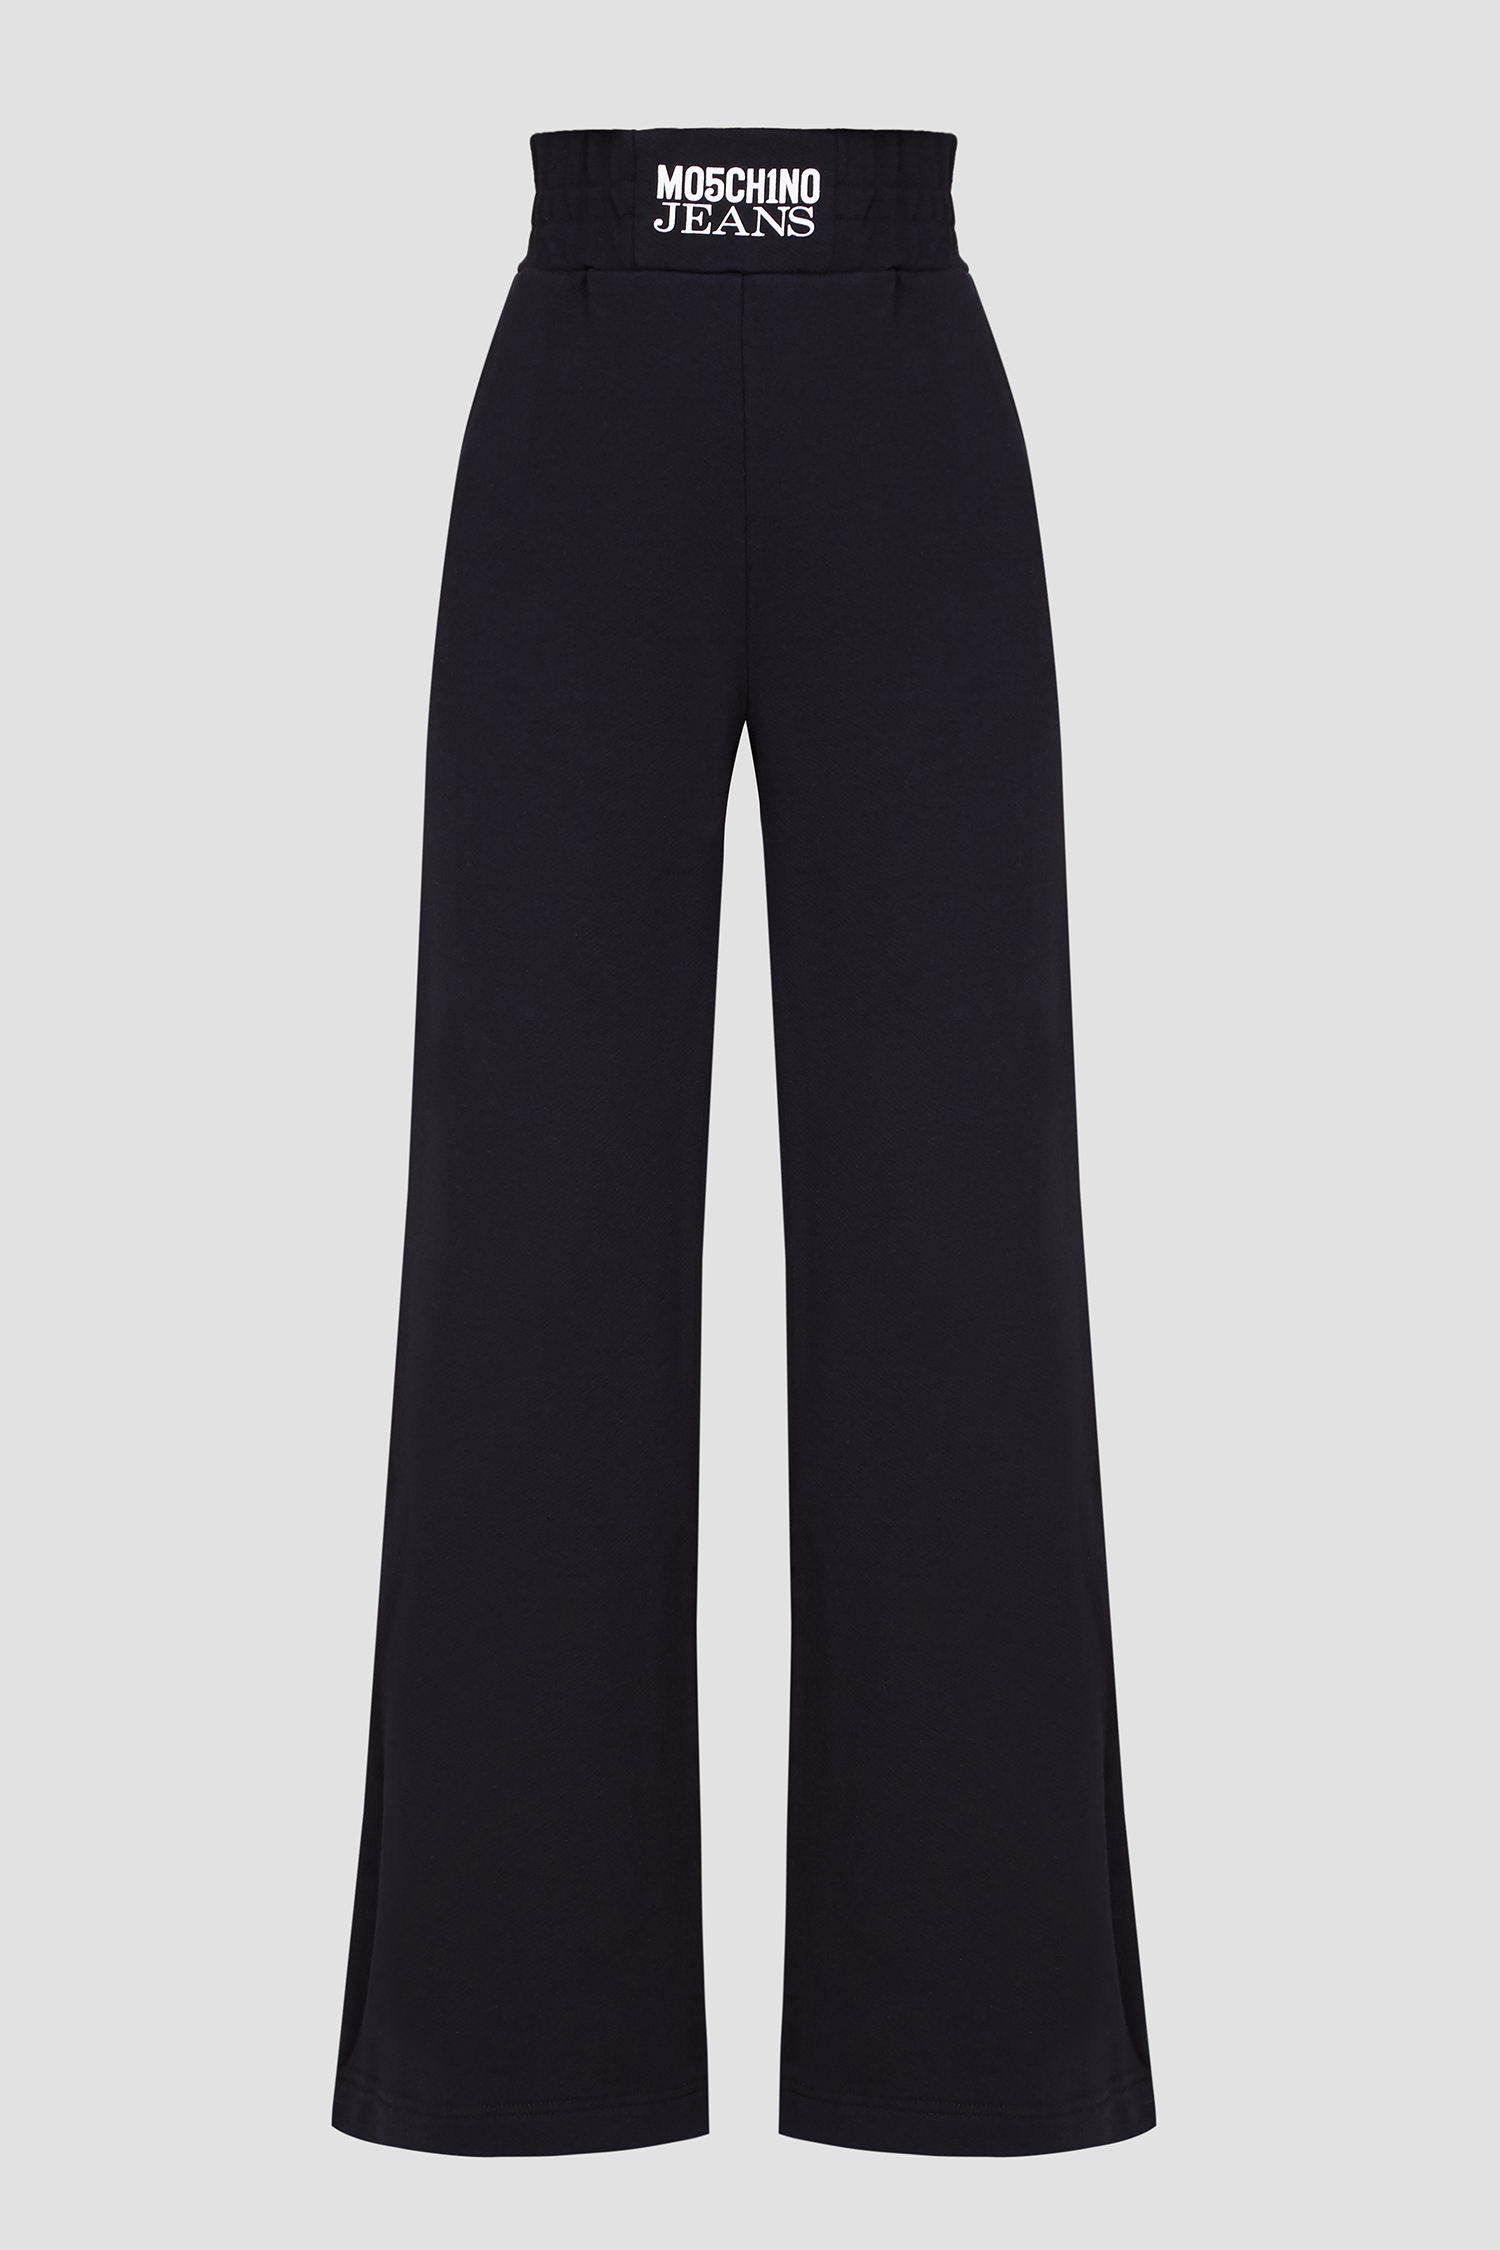 Женские черные спортивные брюки Moschino J0311.8756;5555